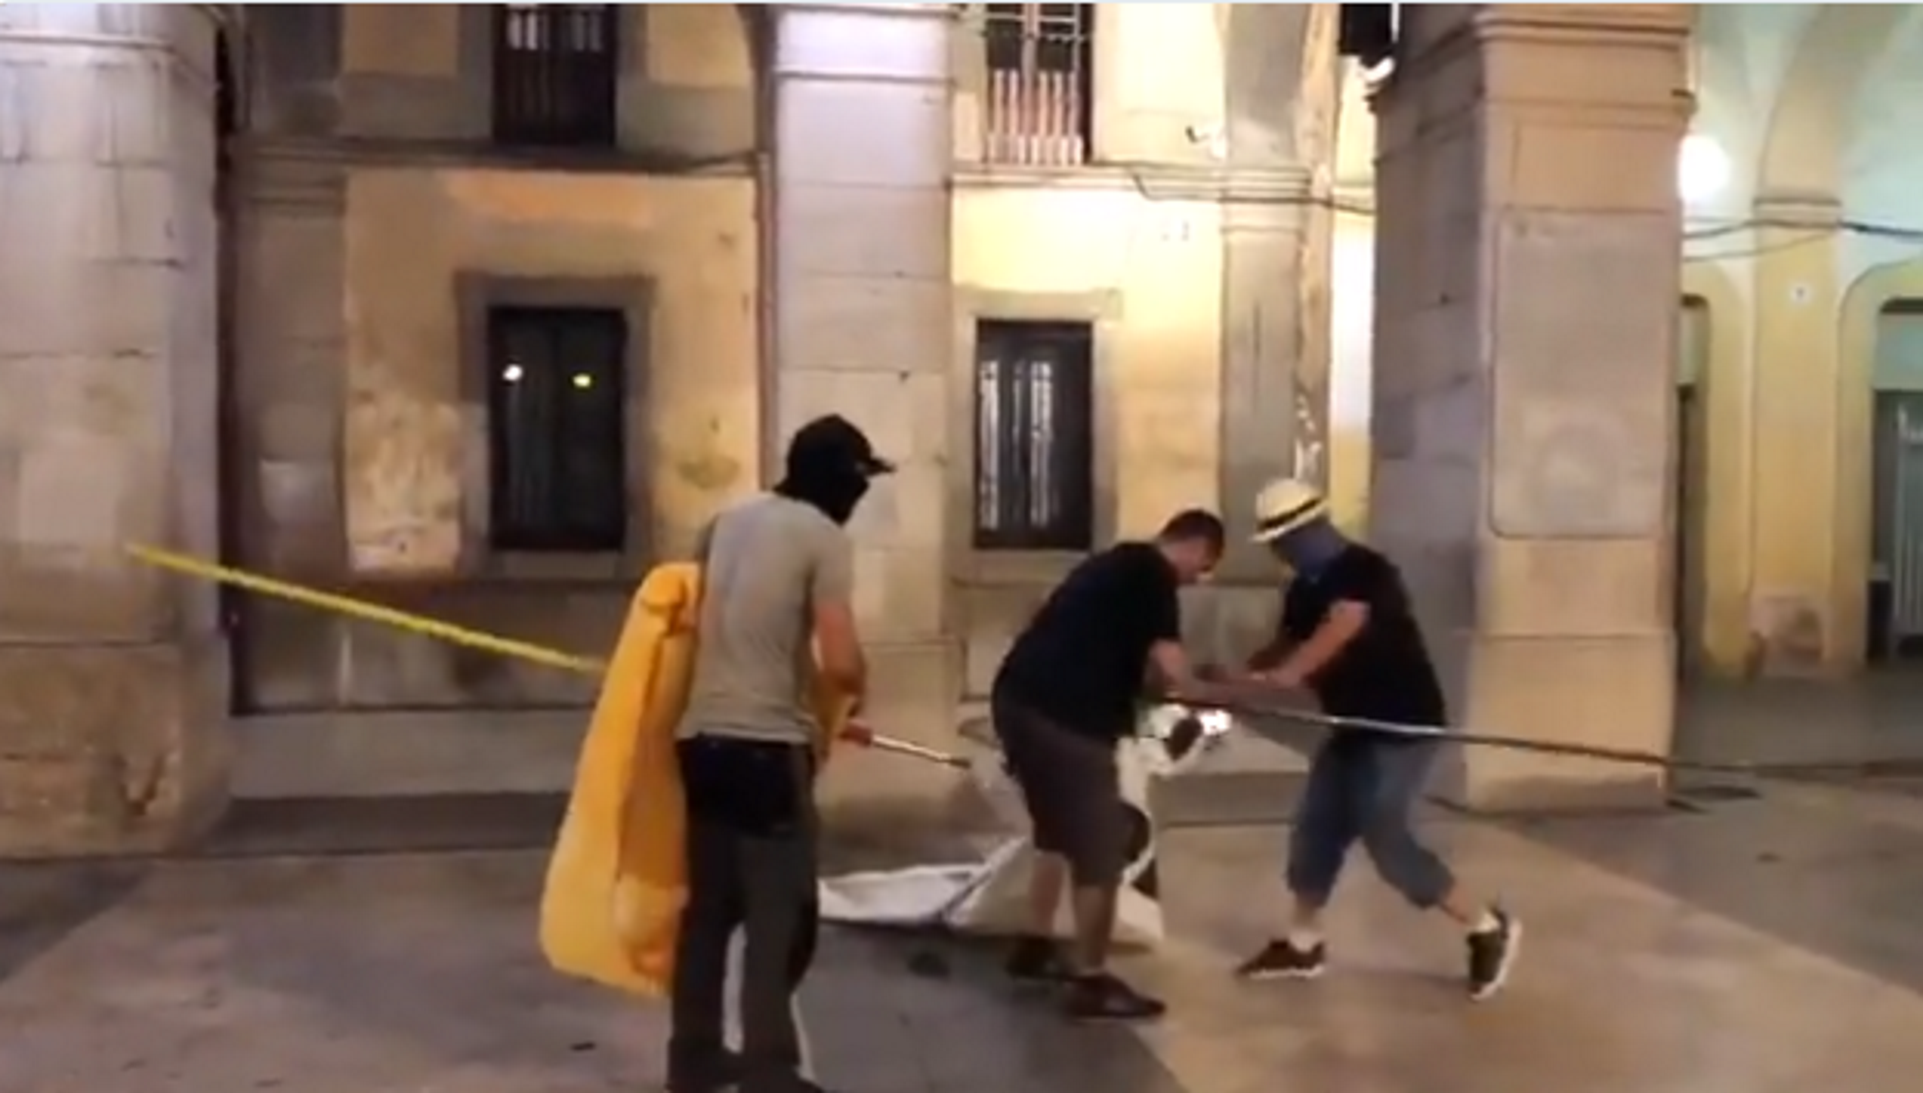 Vídeo: Ultras encapuchados arrancan pancartas de "Democracia" y presos en Vilanova